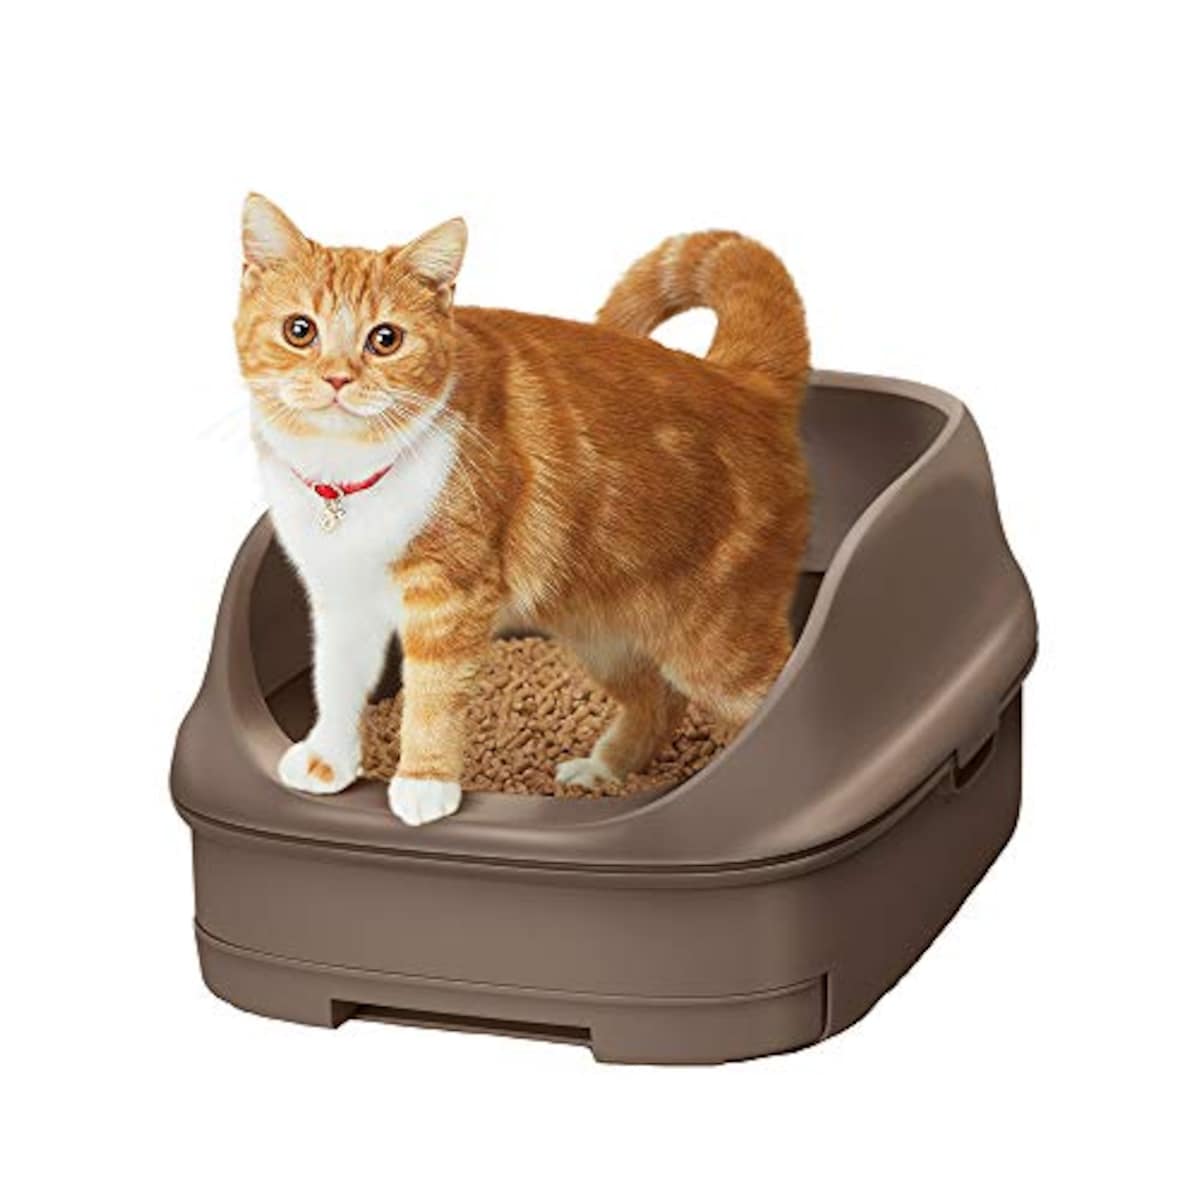  ニャンとも清潔トイレセット オープンタイプ 猫用トイレ本体画像2 